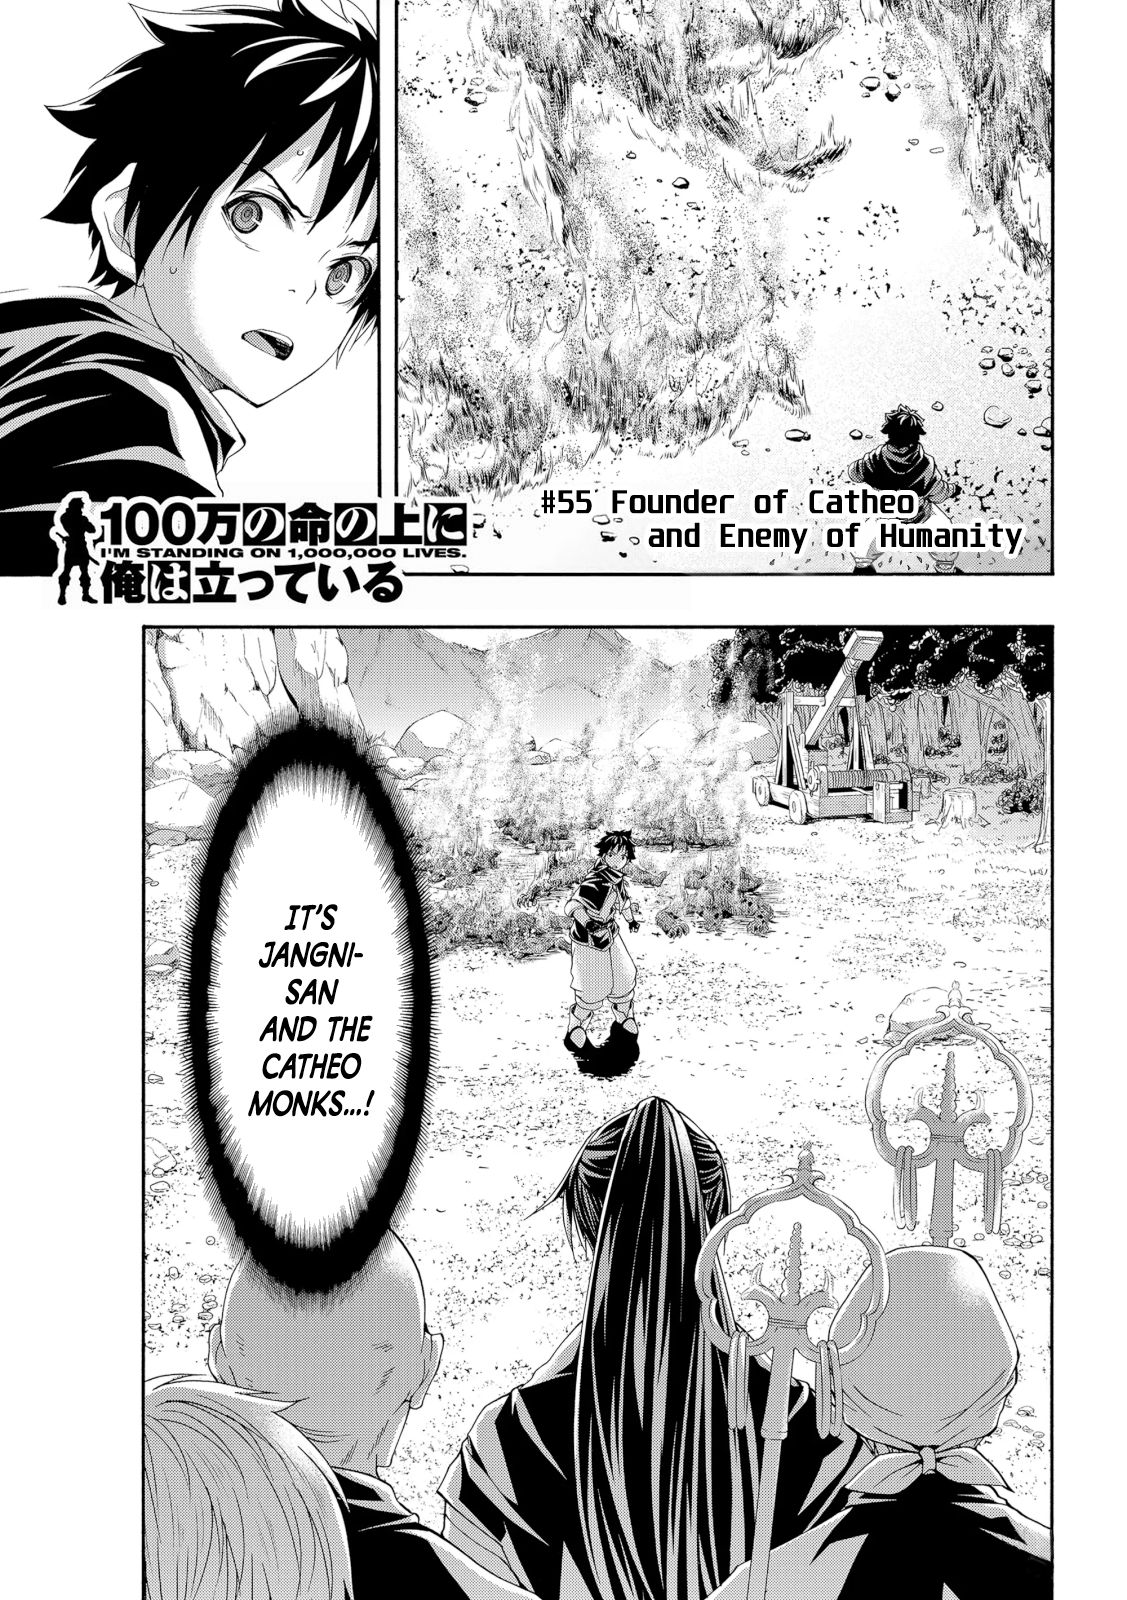 Read 100-man no Inochi no Ue ni Ore wa Tatte Iru Manga English [New  Chapters] Online Free - MangaClash